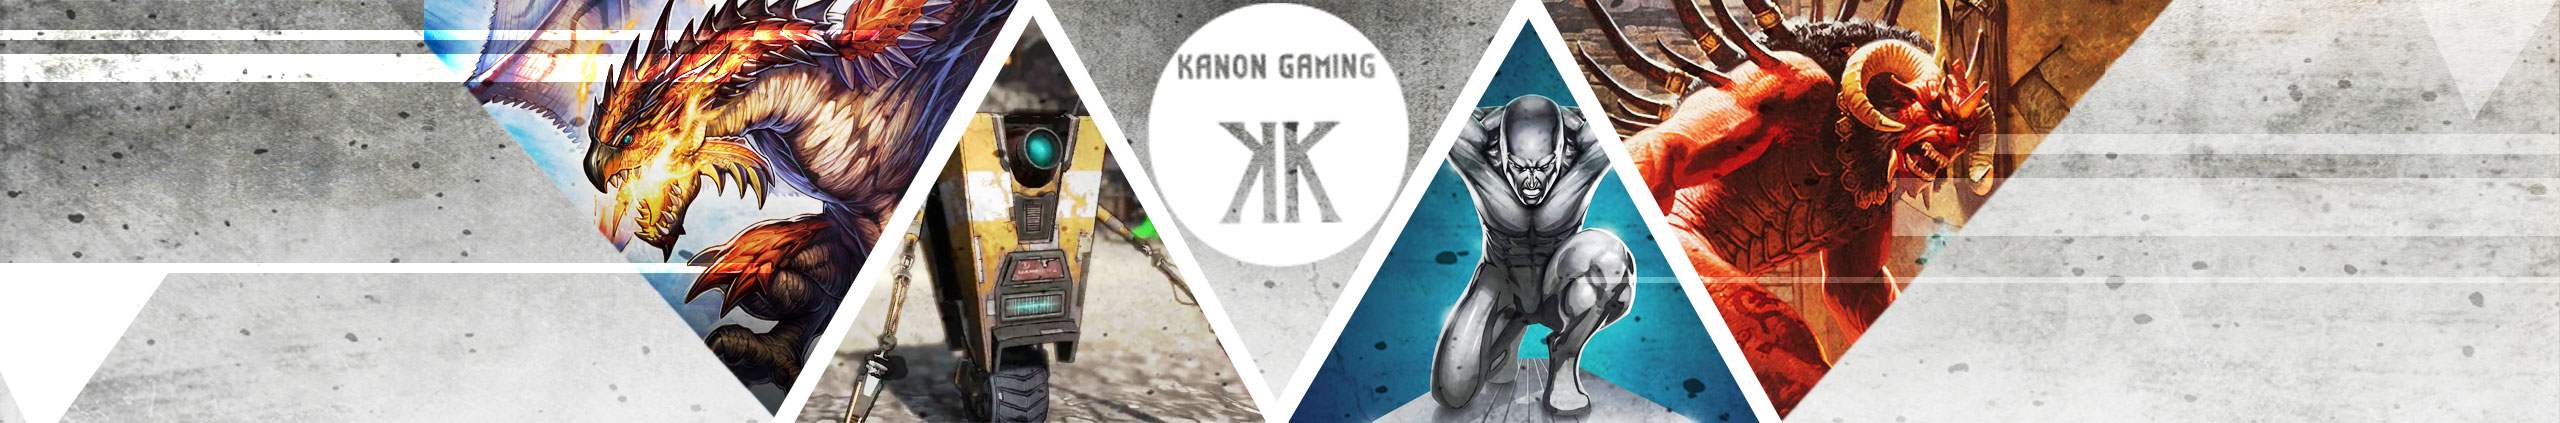 Kanon Gaming